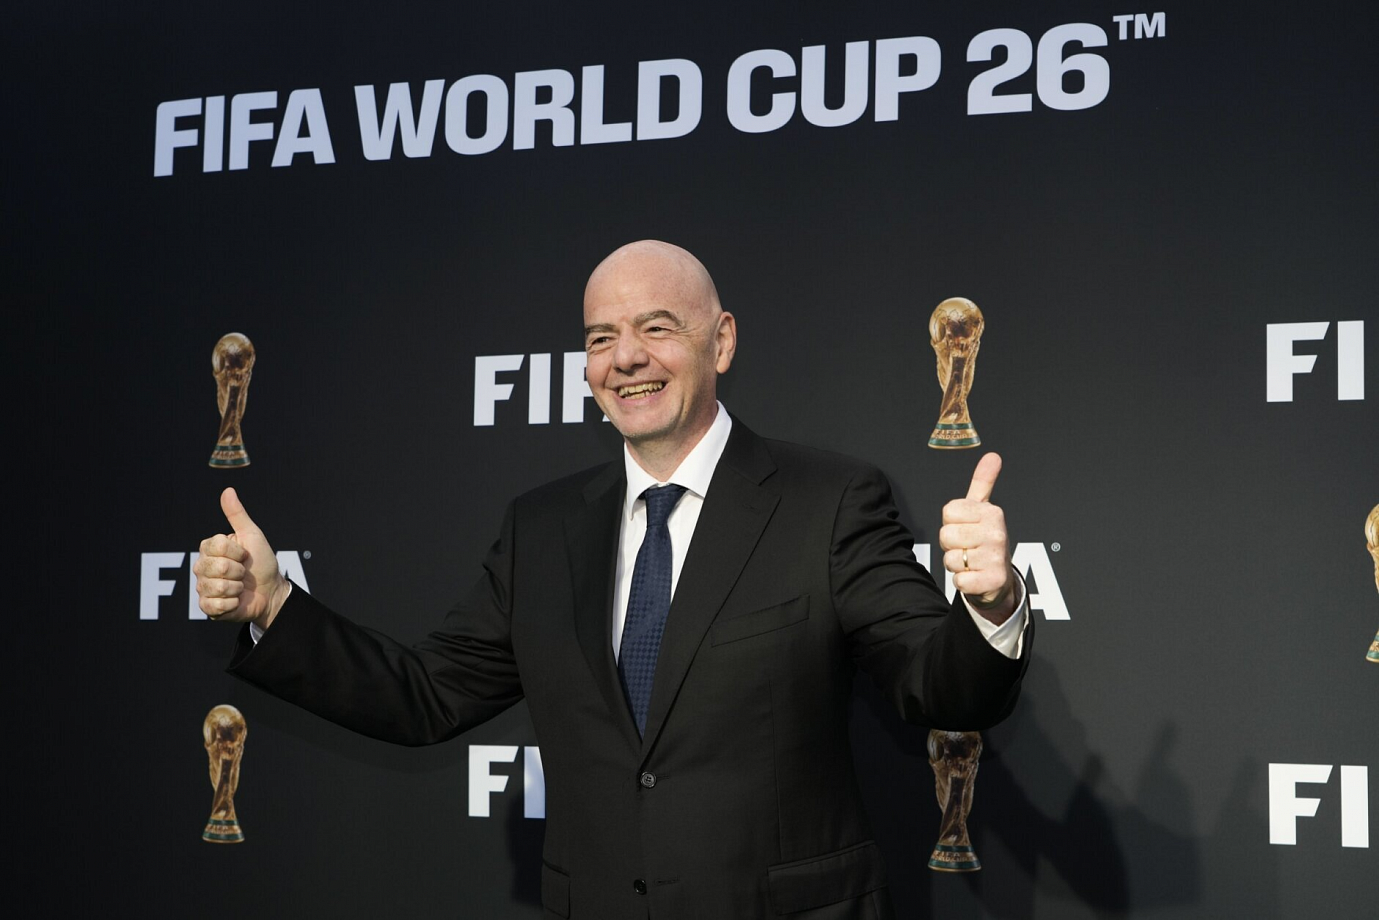 El jefe de la FIFA, Gianni Infantino, presentó el lema oficial de la Copa Mundial de la FIFA 2026